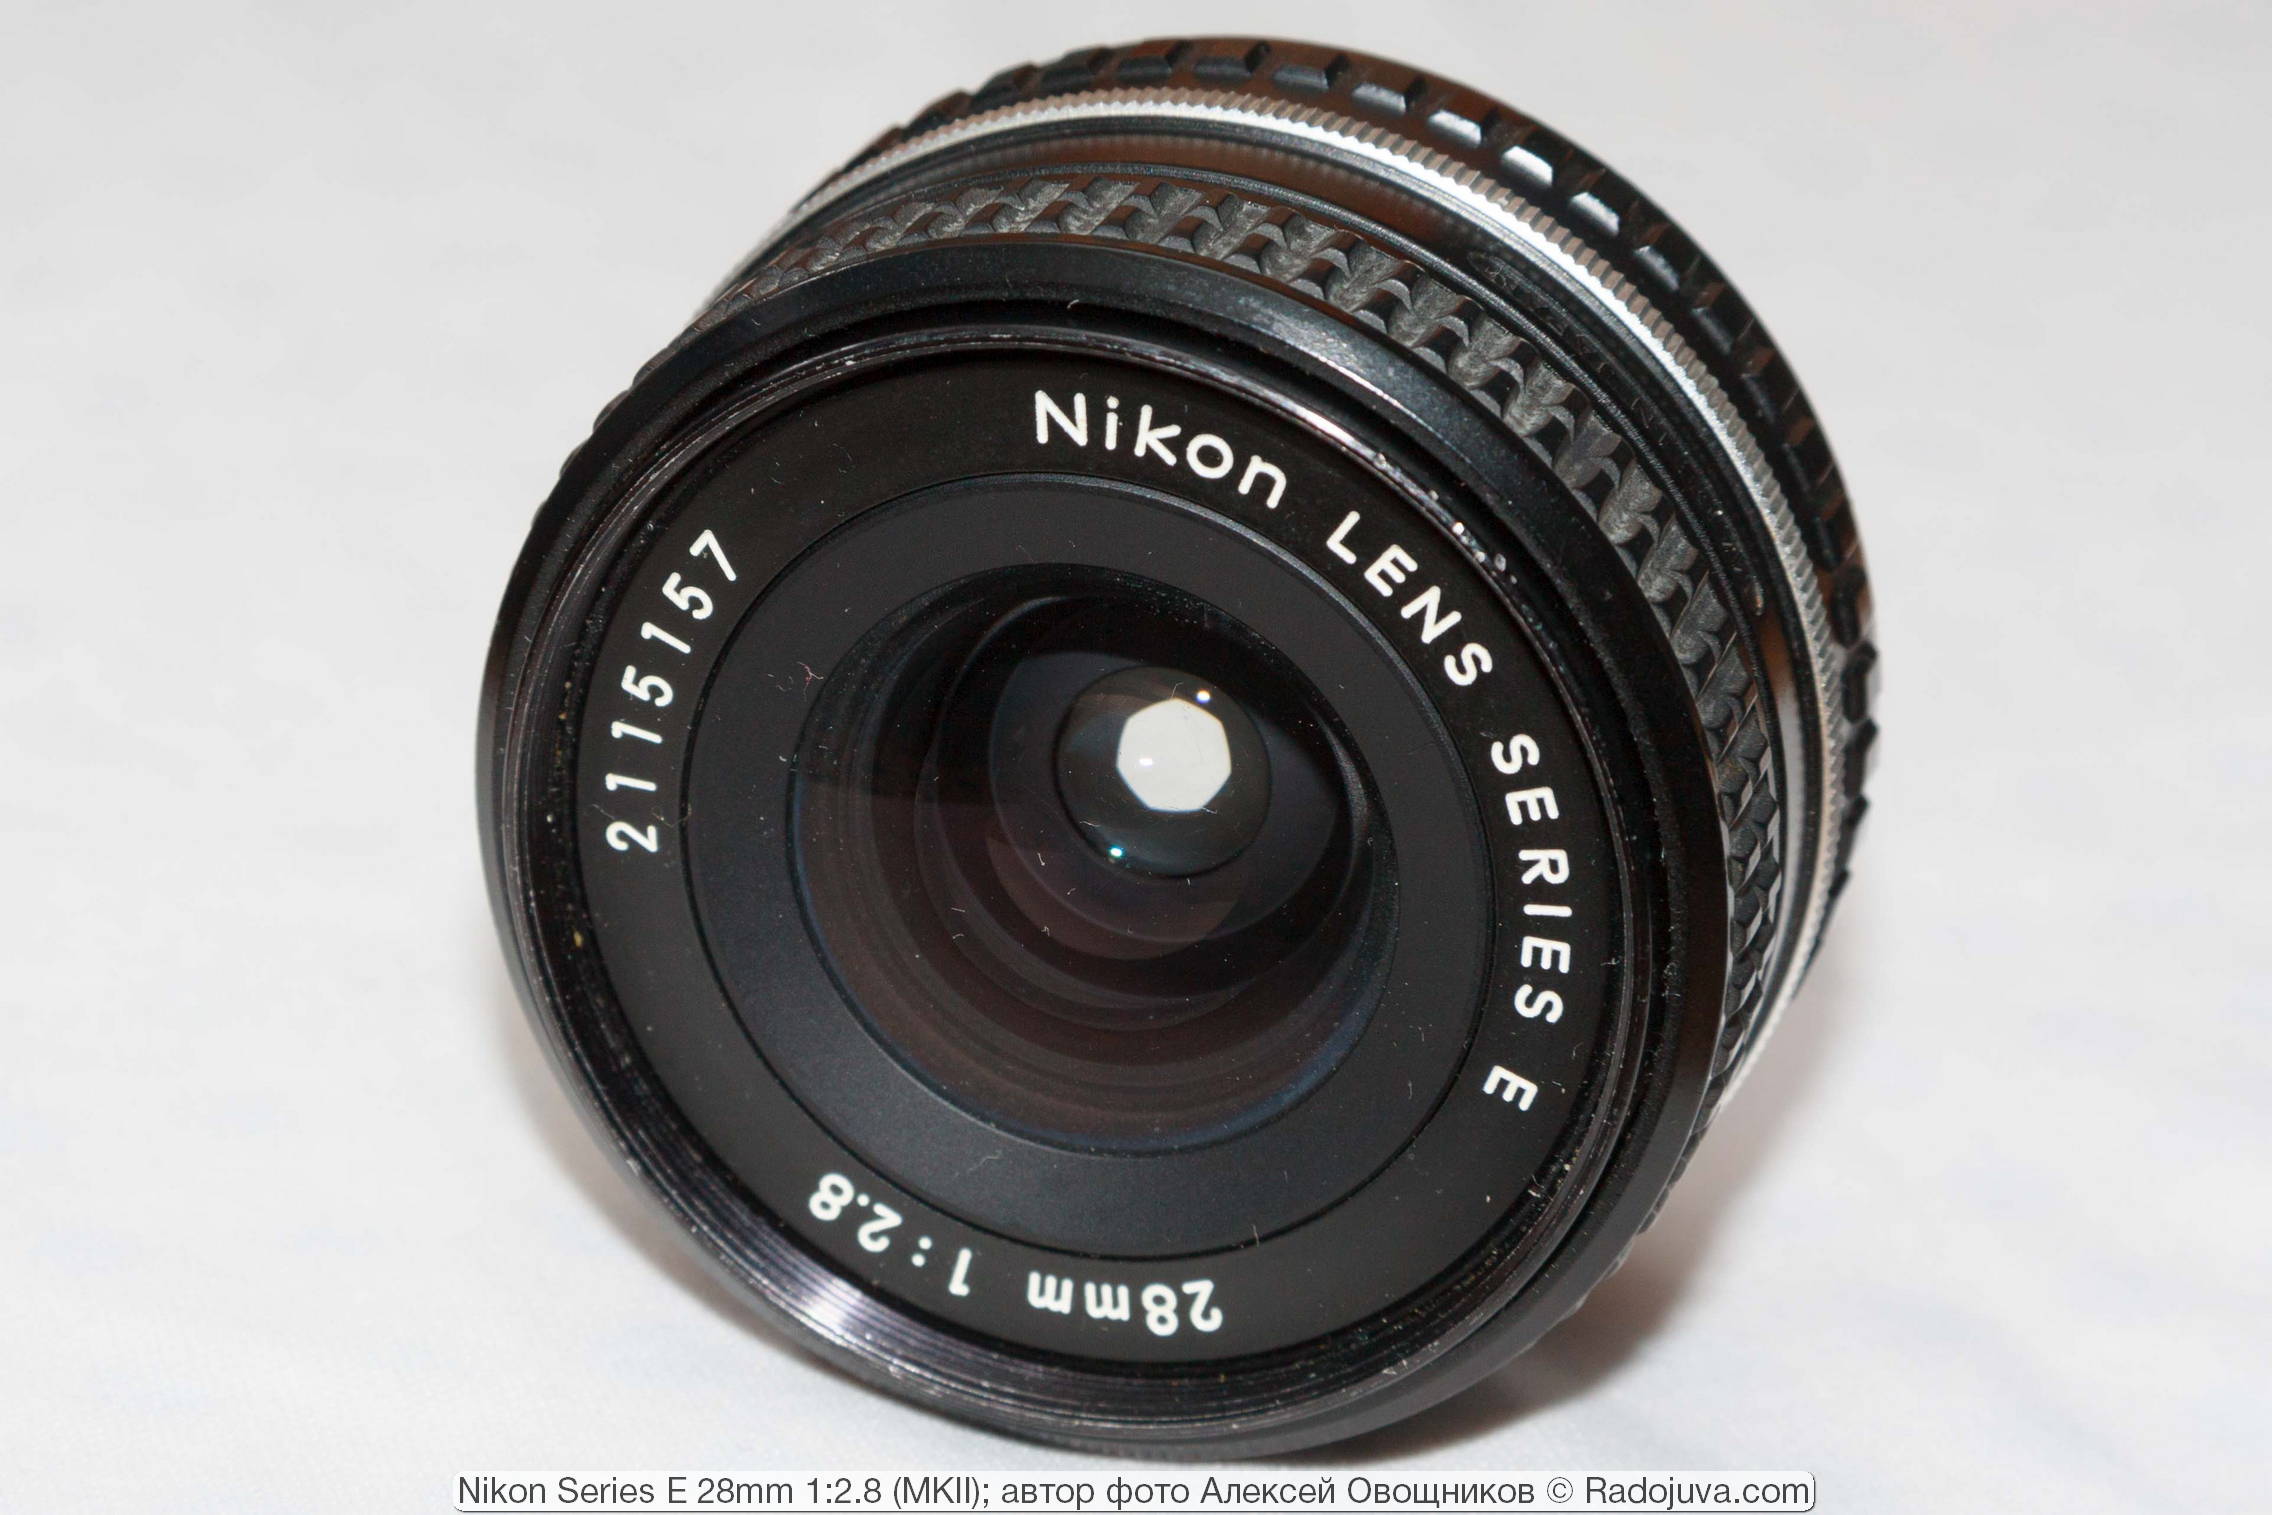 Nikon Series E 28mm 1:2.8 MKII